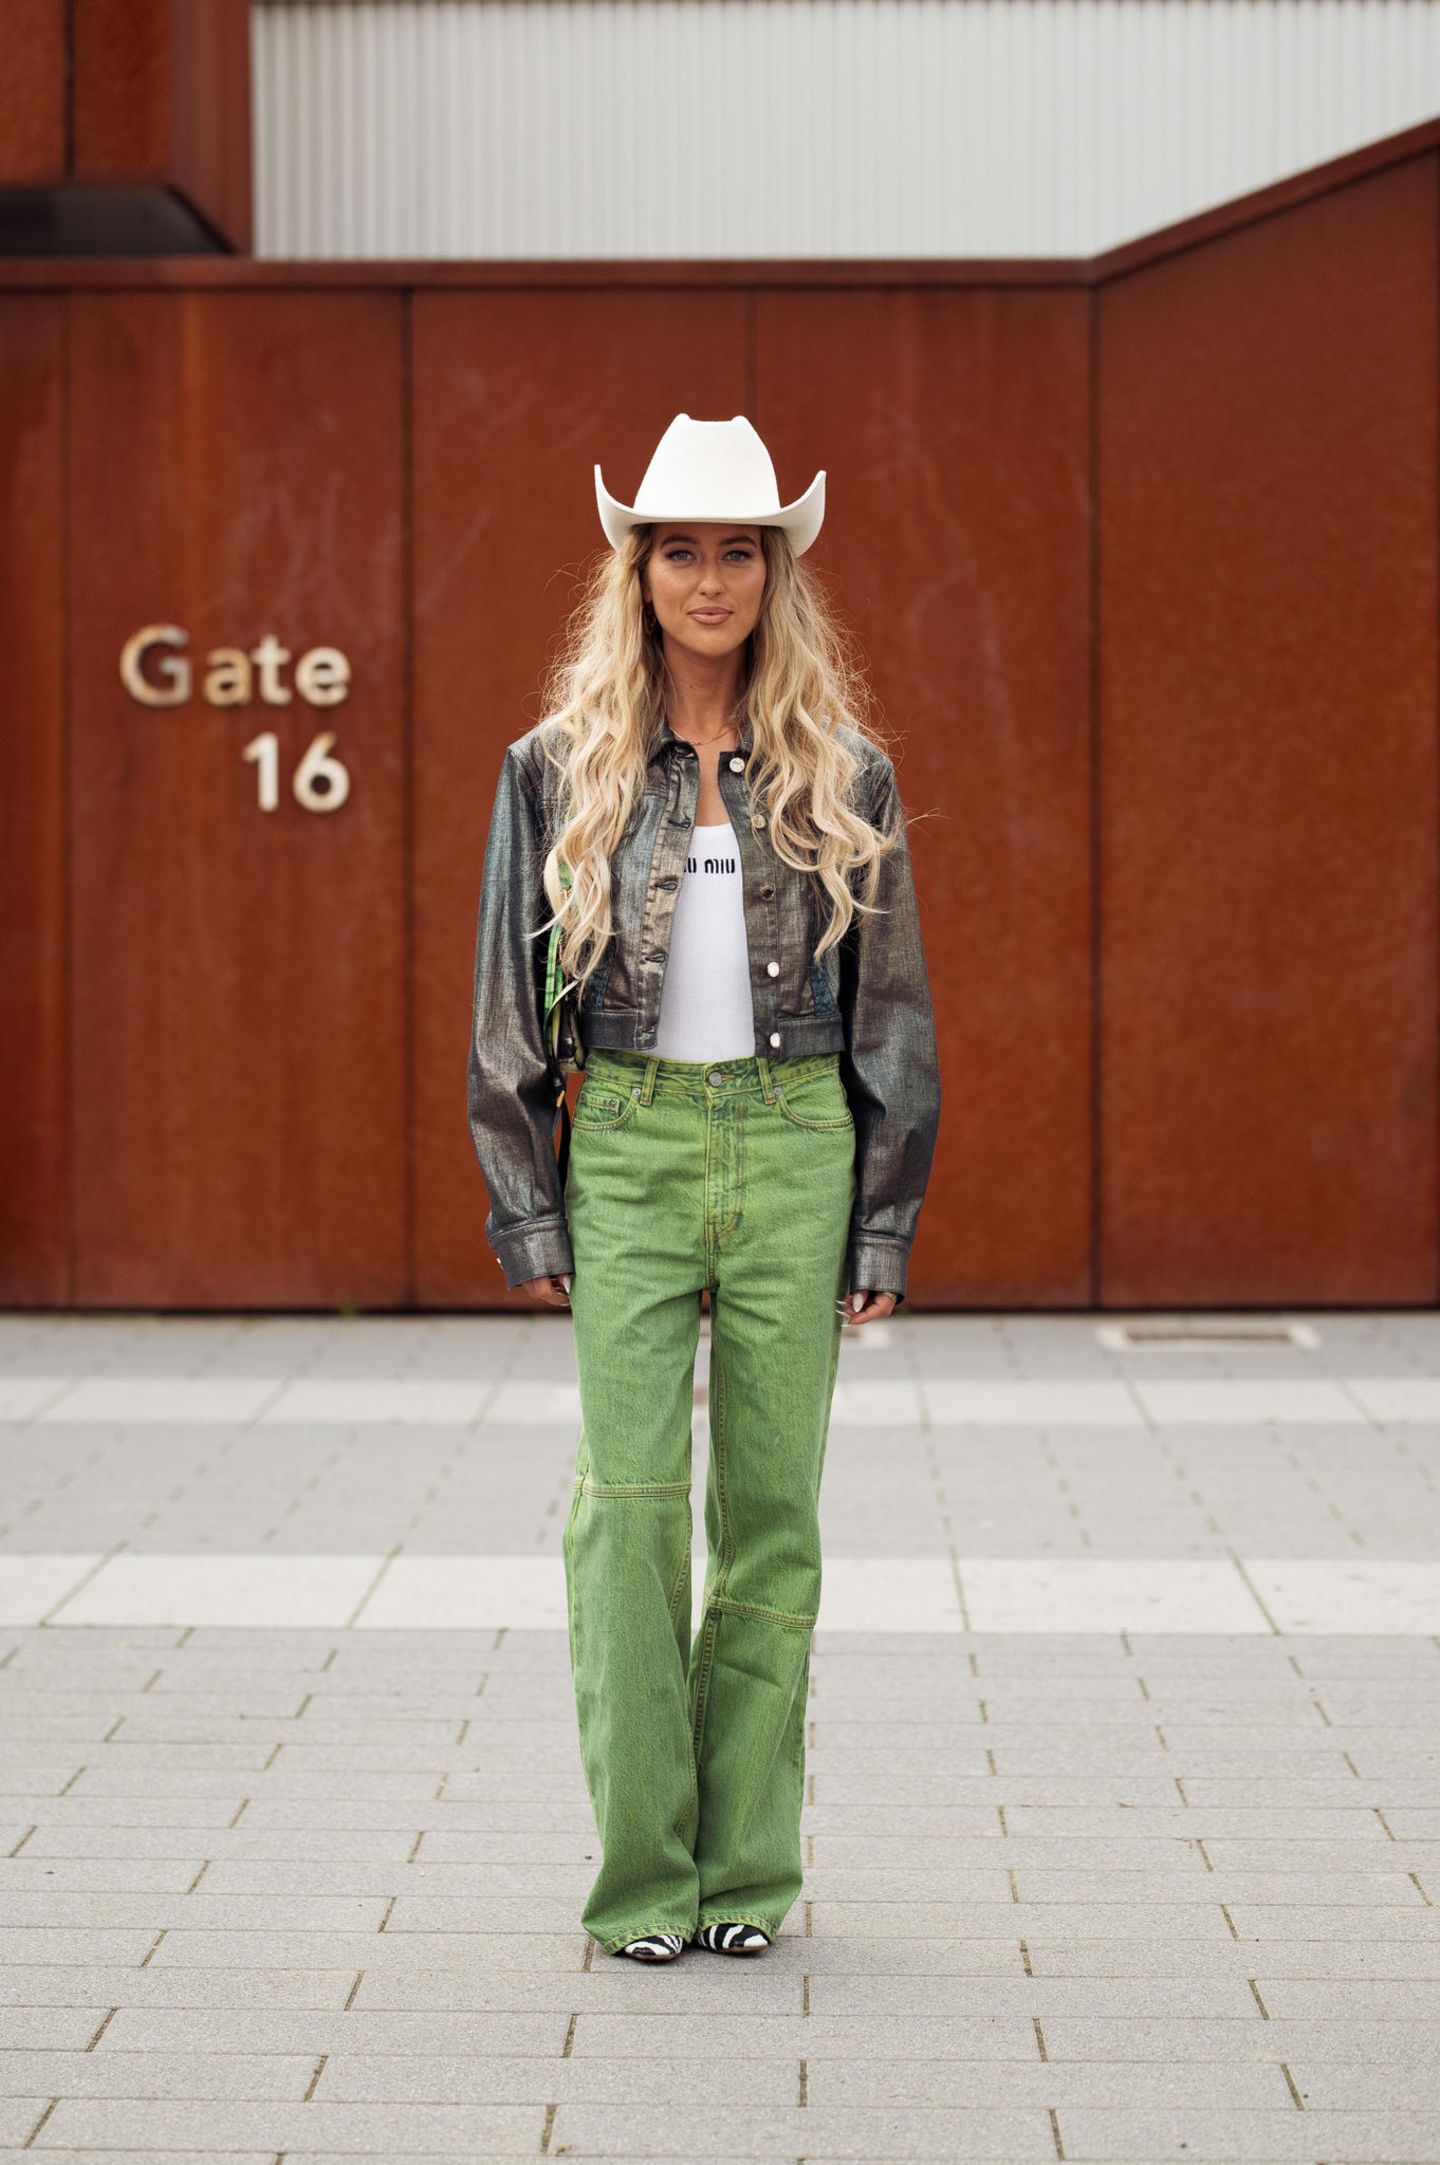 Ganz im Western-Look besucht Emili Sindlev die Alberta Ferretti Show in Mailand. Sie trägt einen weißen Cowboyhut, eine gecroppte Lederjacke in Holo-Optik, ein Miu-Miu-Top und eine grüne Jeans. Zebra-Schuhe machen das Outfit komplett. 